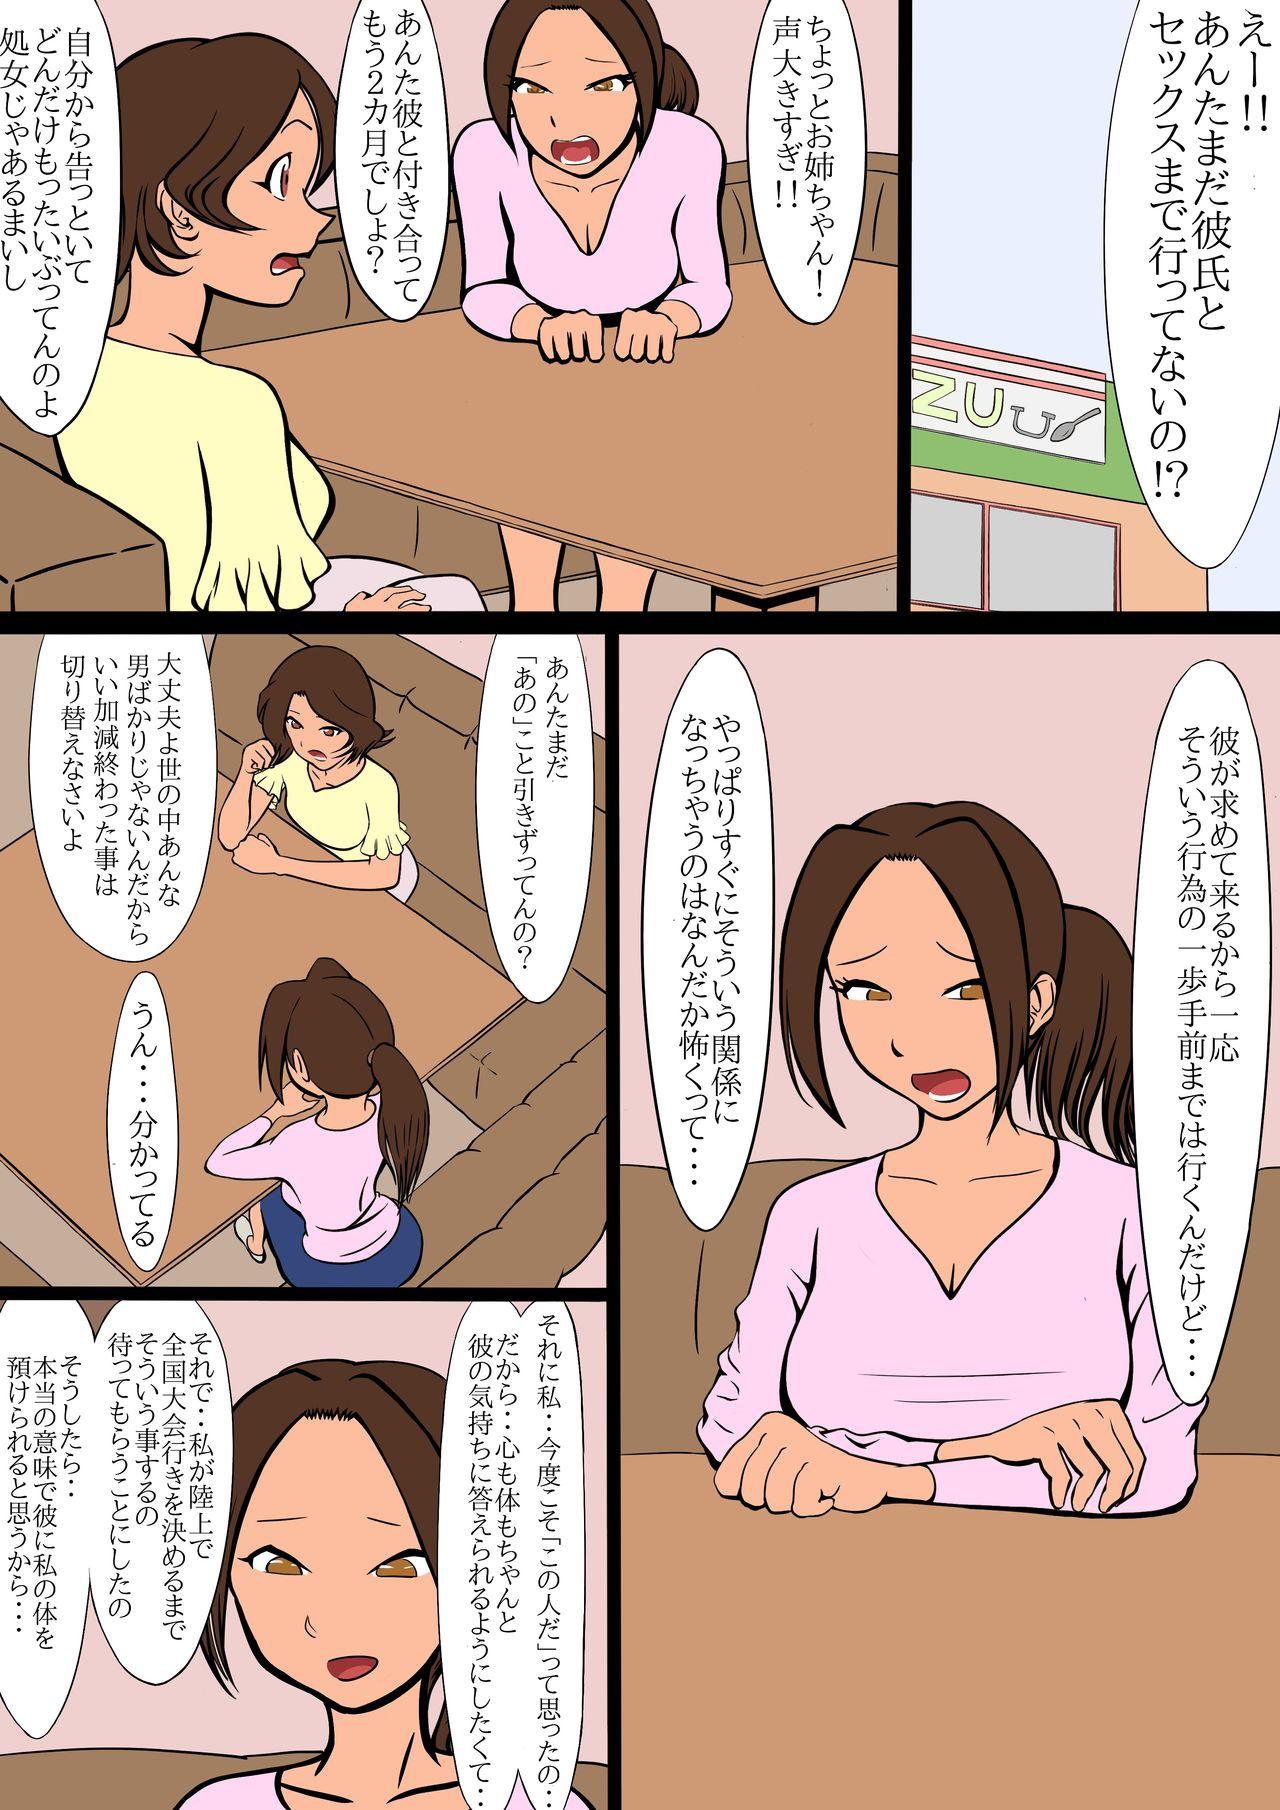 Girlsfucking netorare furasshu bakku - Original Strap On - Page 11